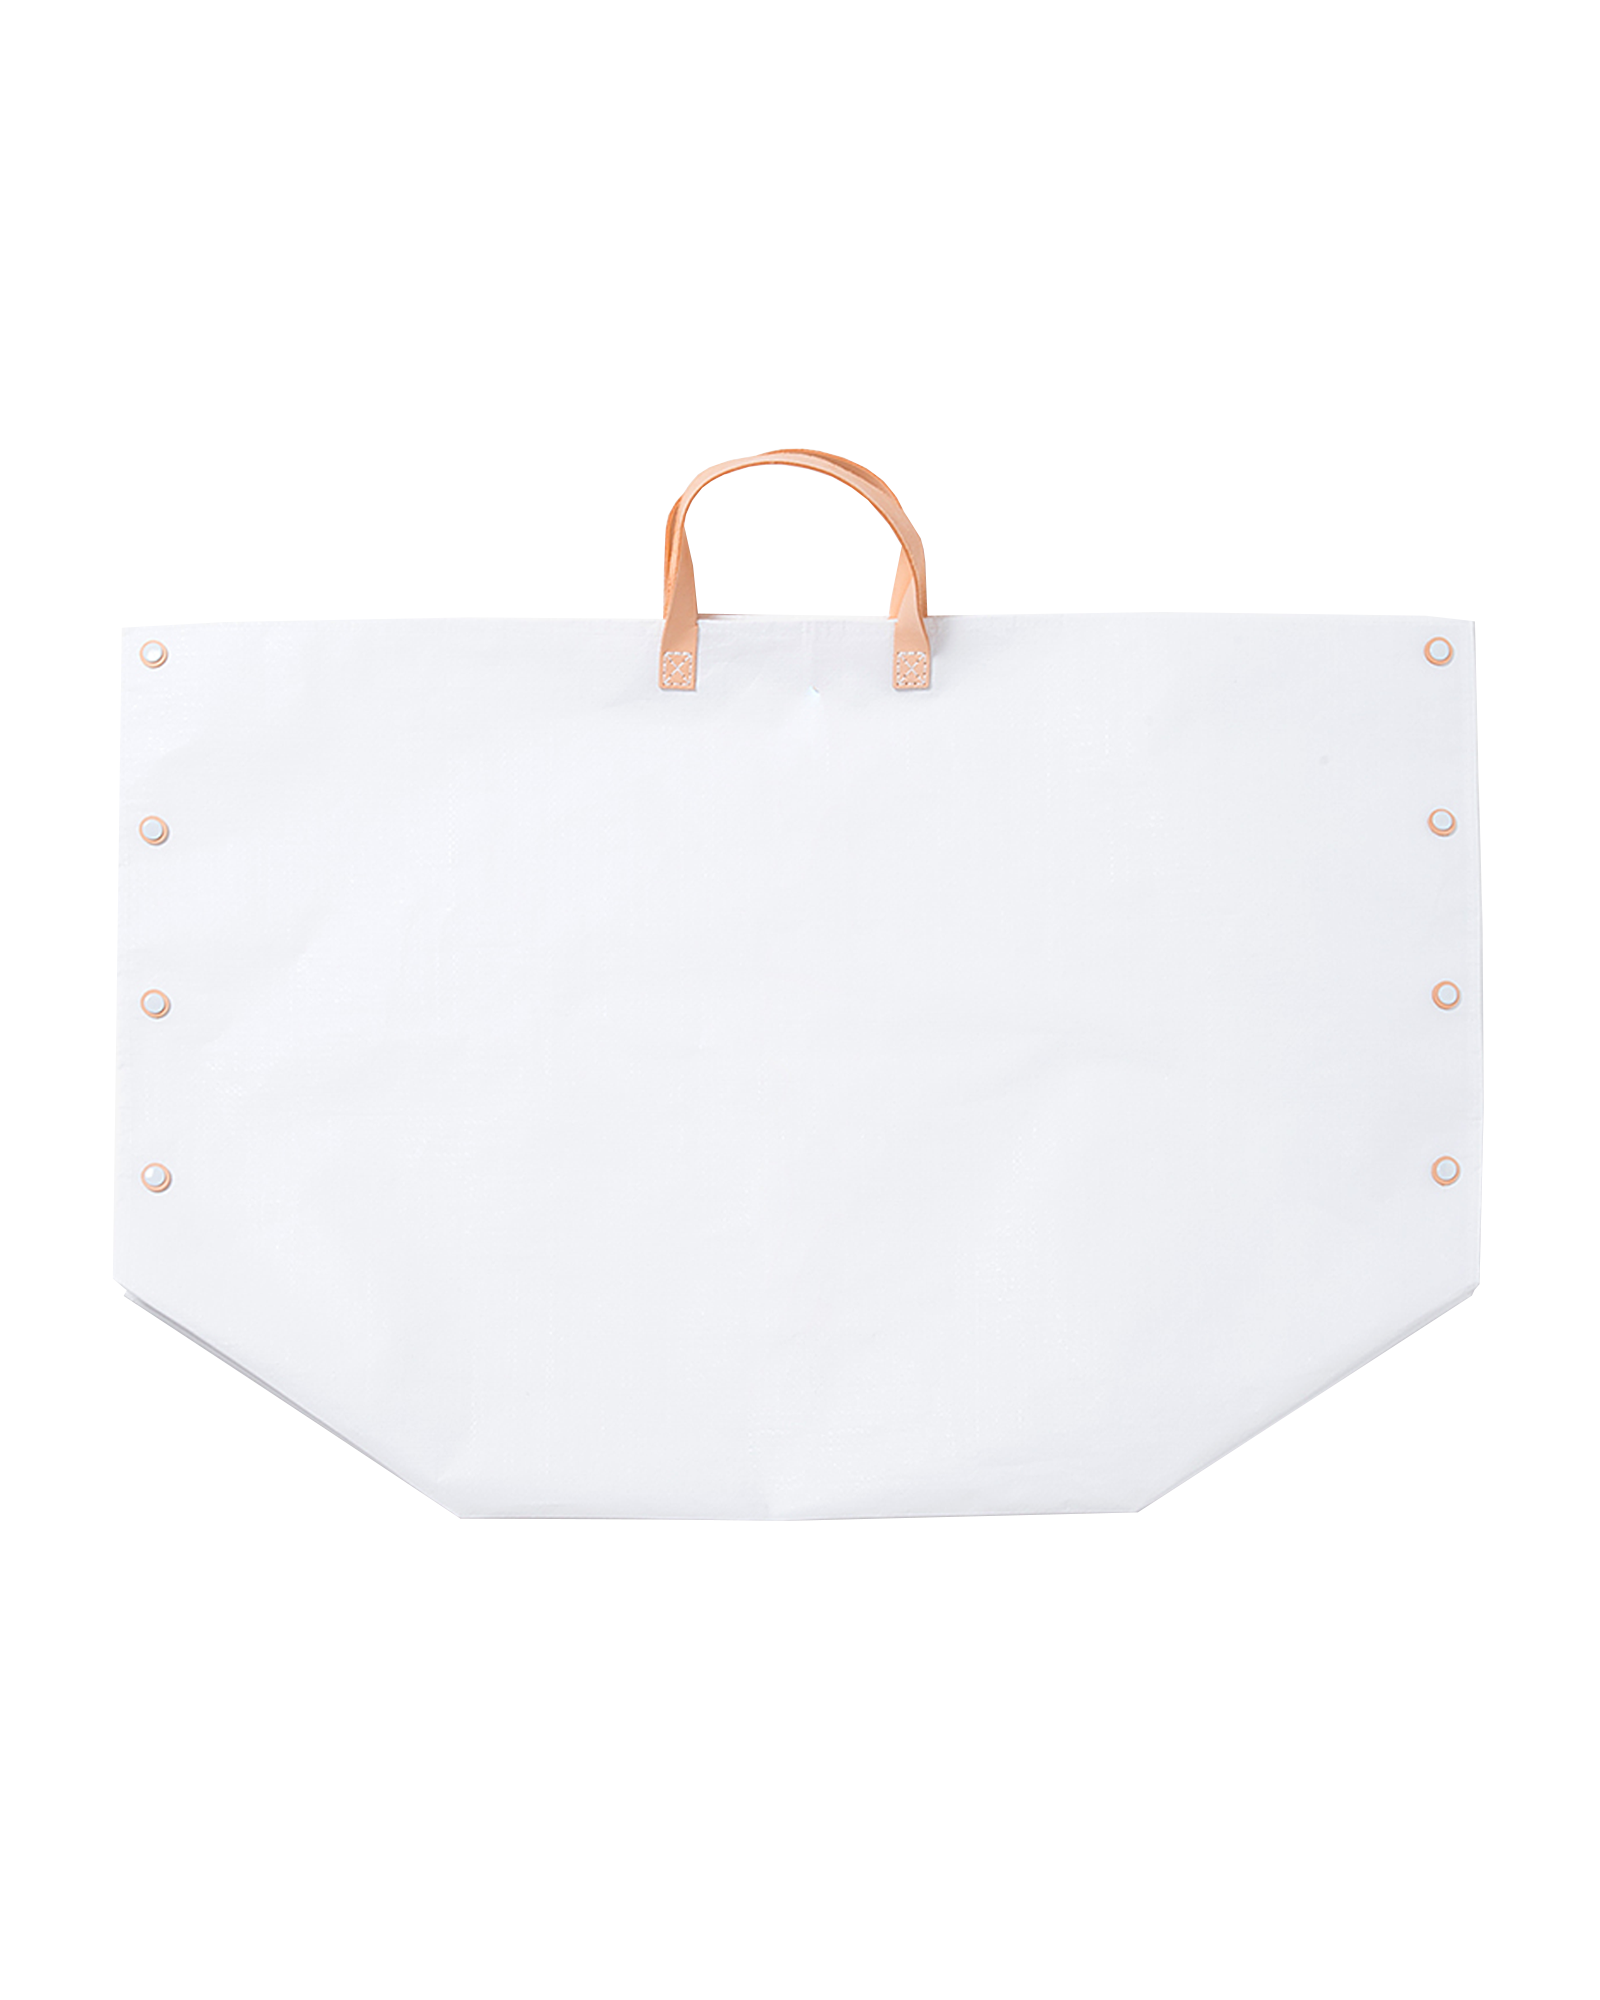 Picnic Bag for Family (White or Black)